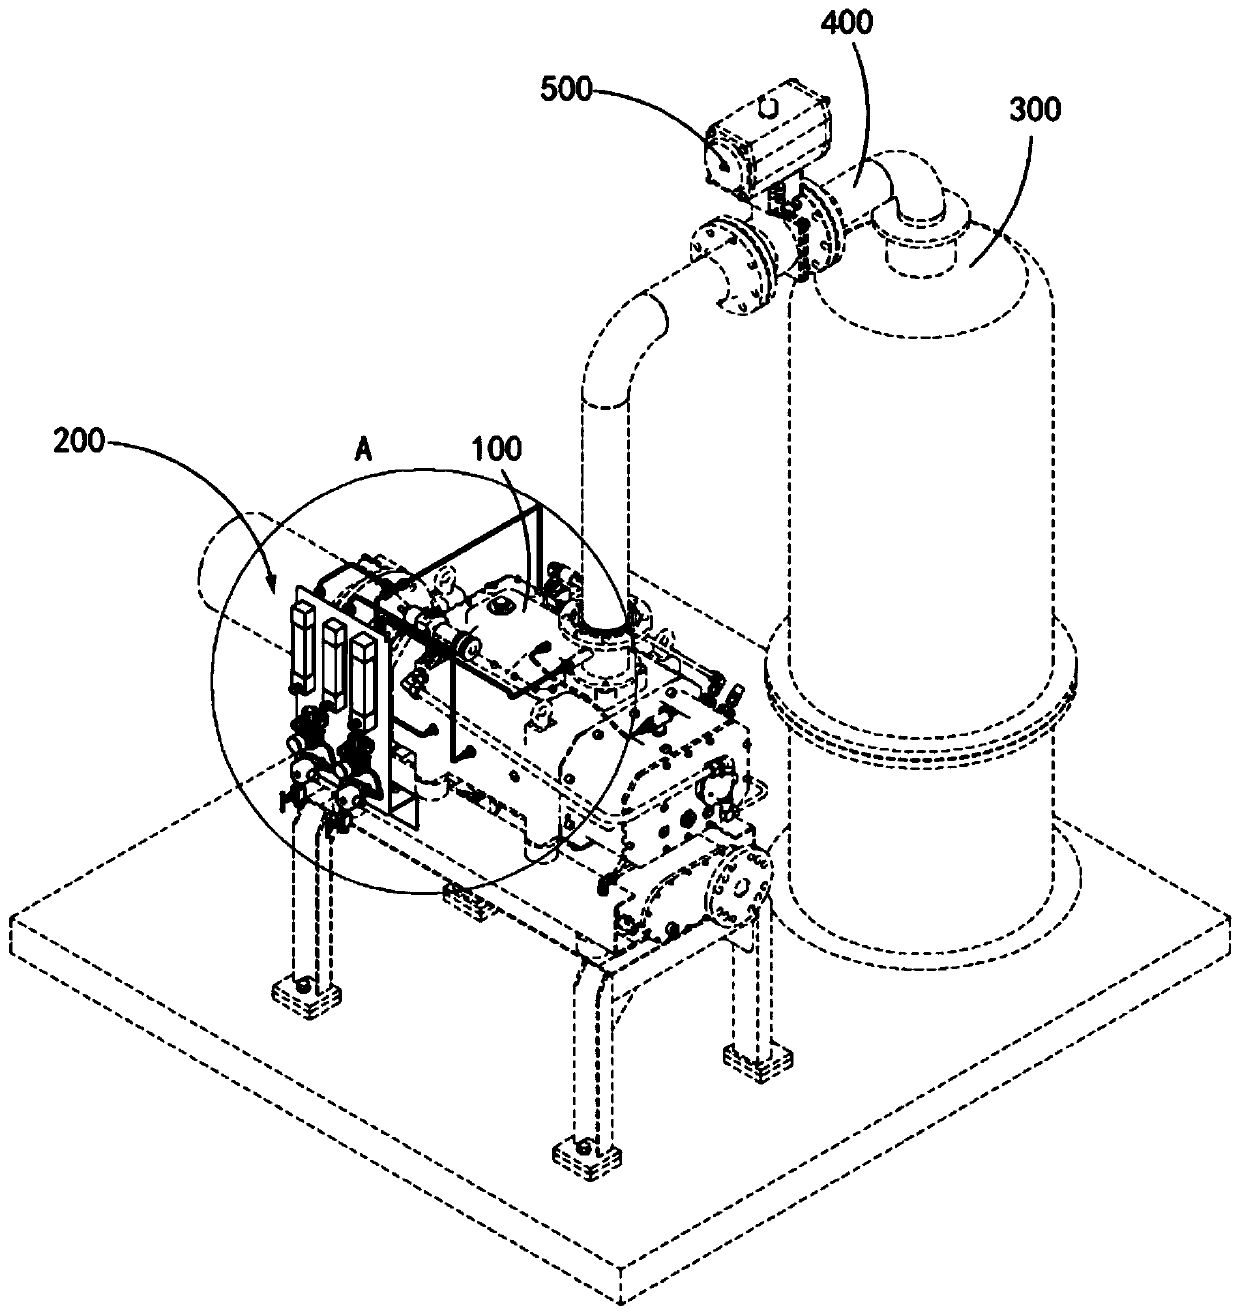 Dry vacuum pump and crude oil vacuum flash evaporation treatment device